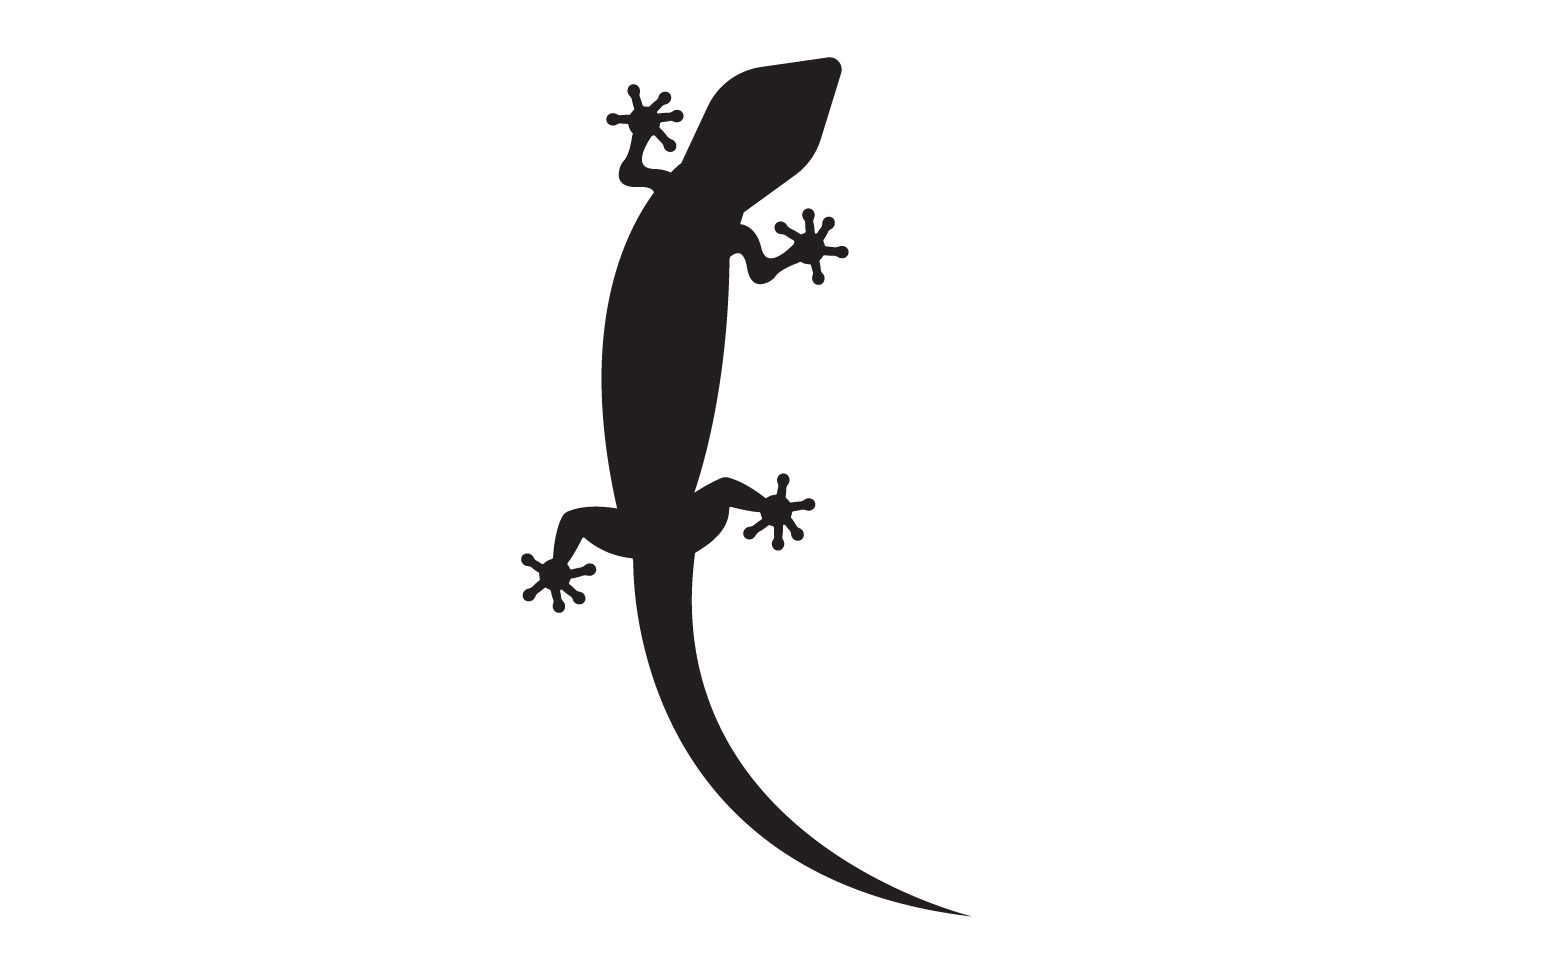 Lizard chameleon home lizard logo v33